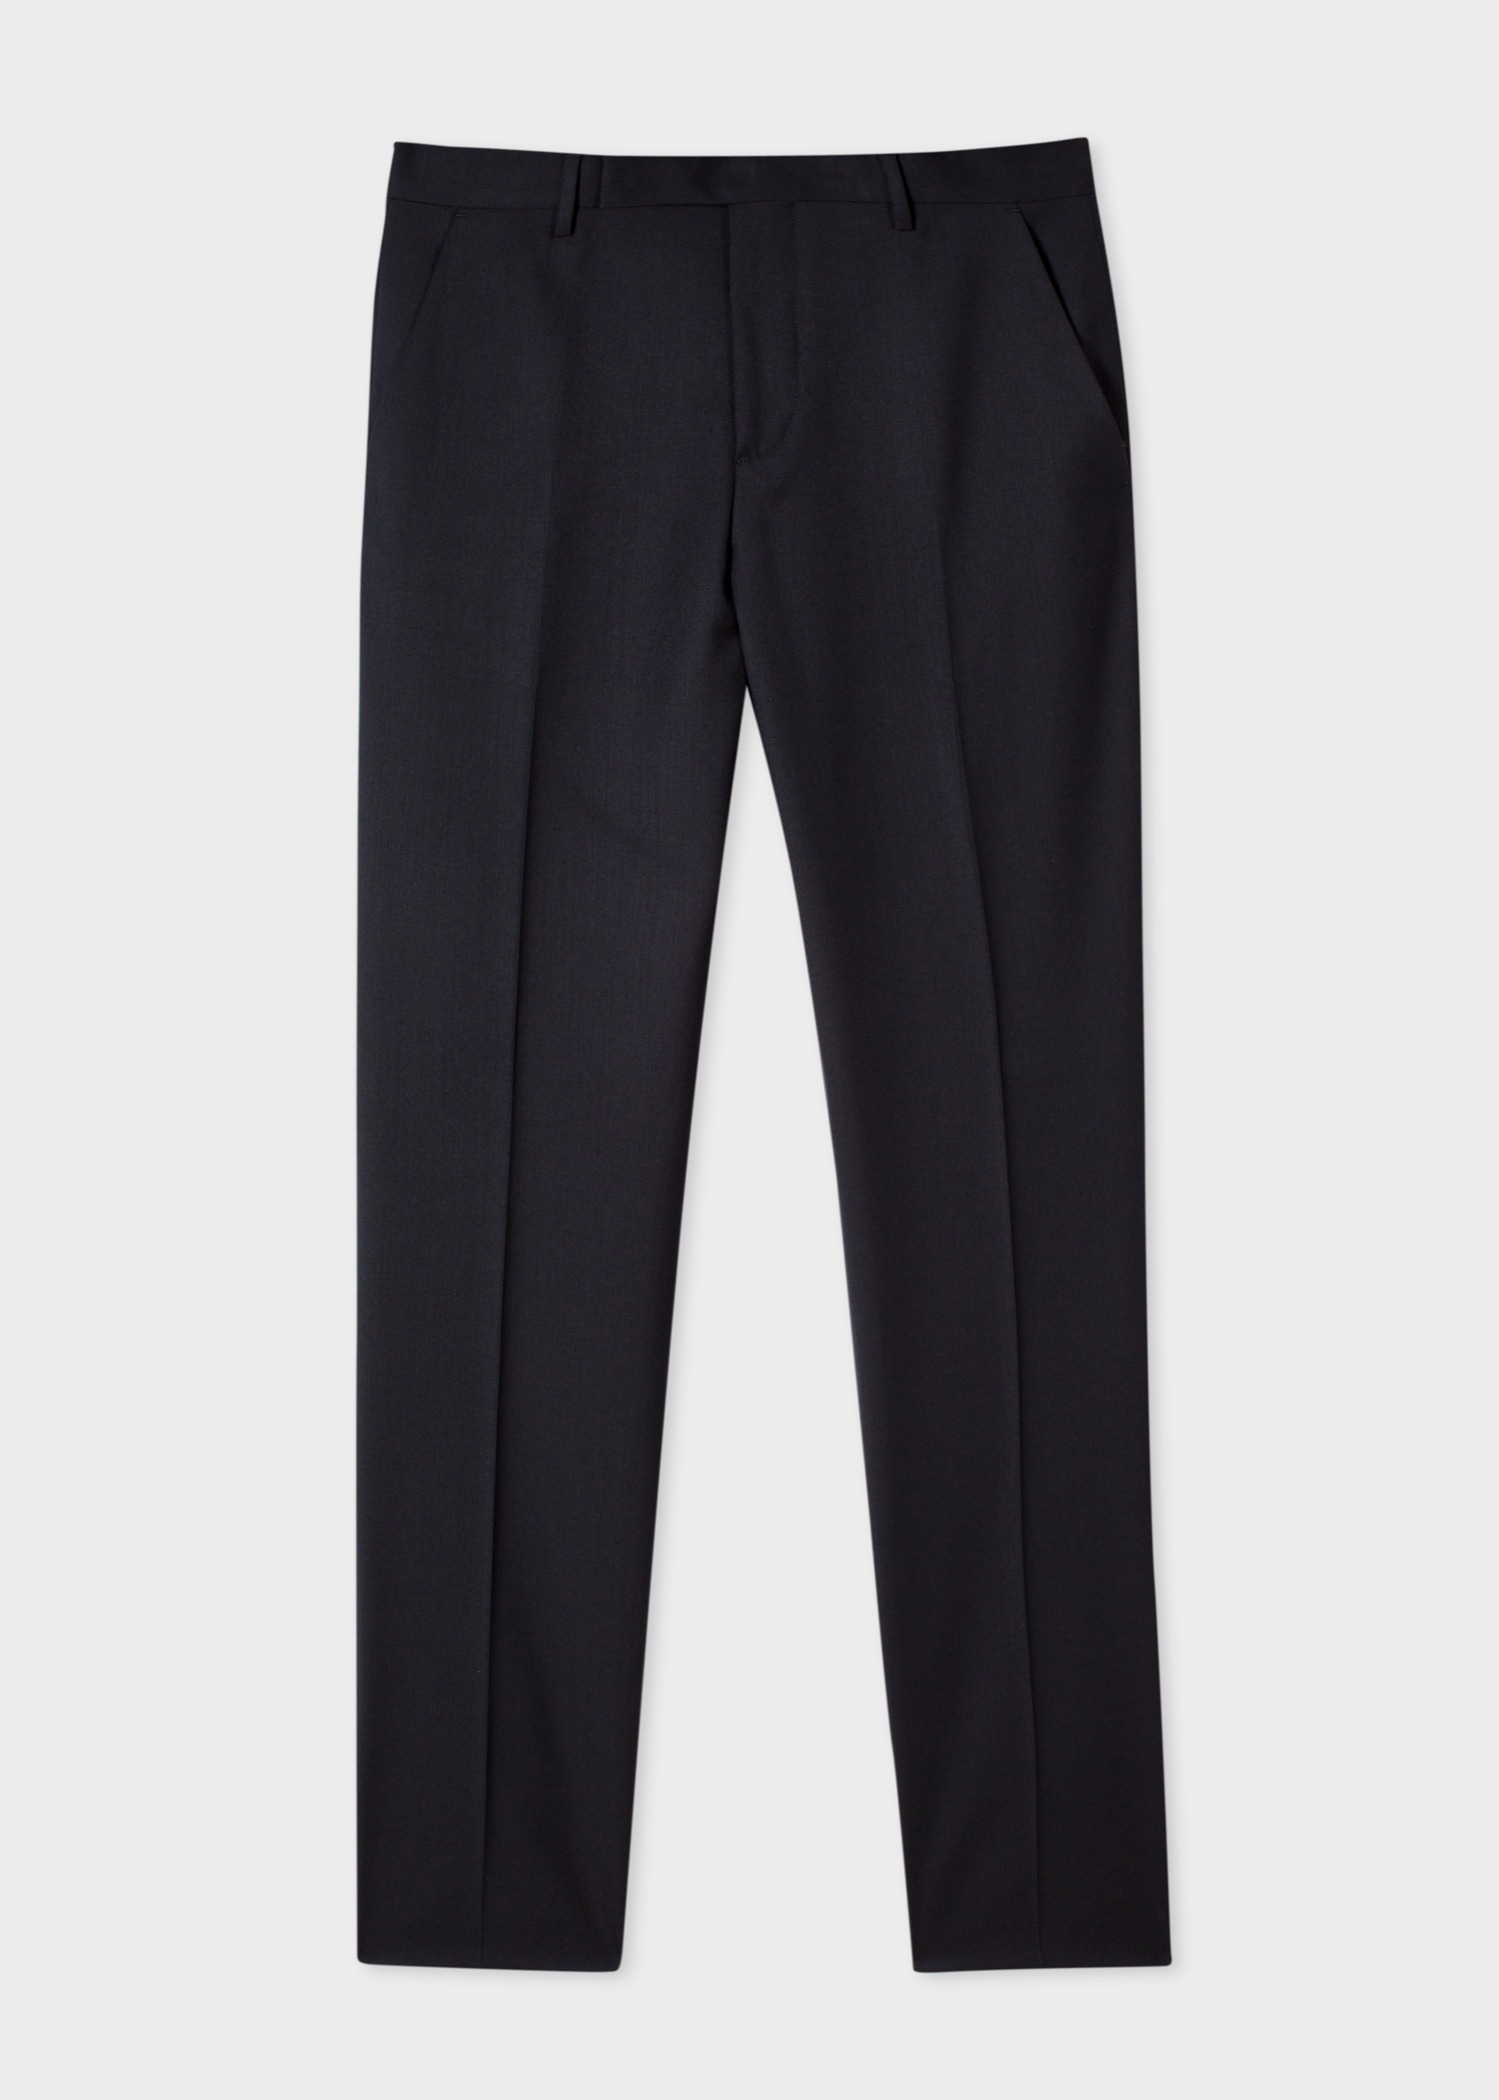 Men's Slim-Fit Black Wool 'A Suit To Travel In' Pants